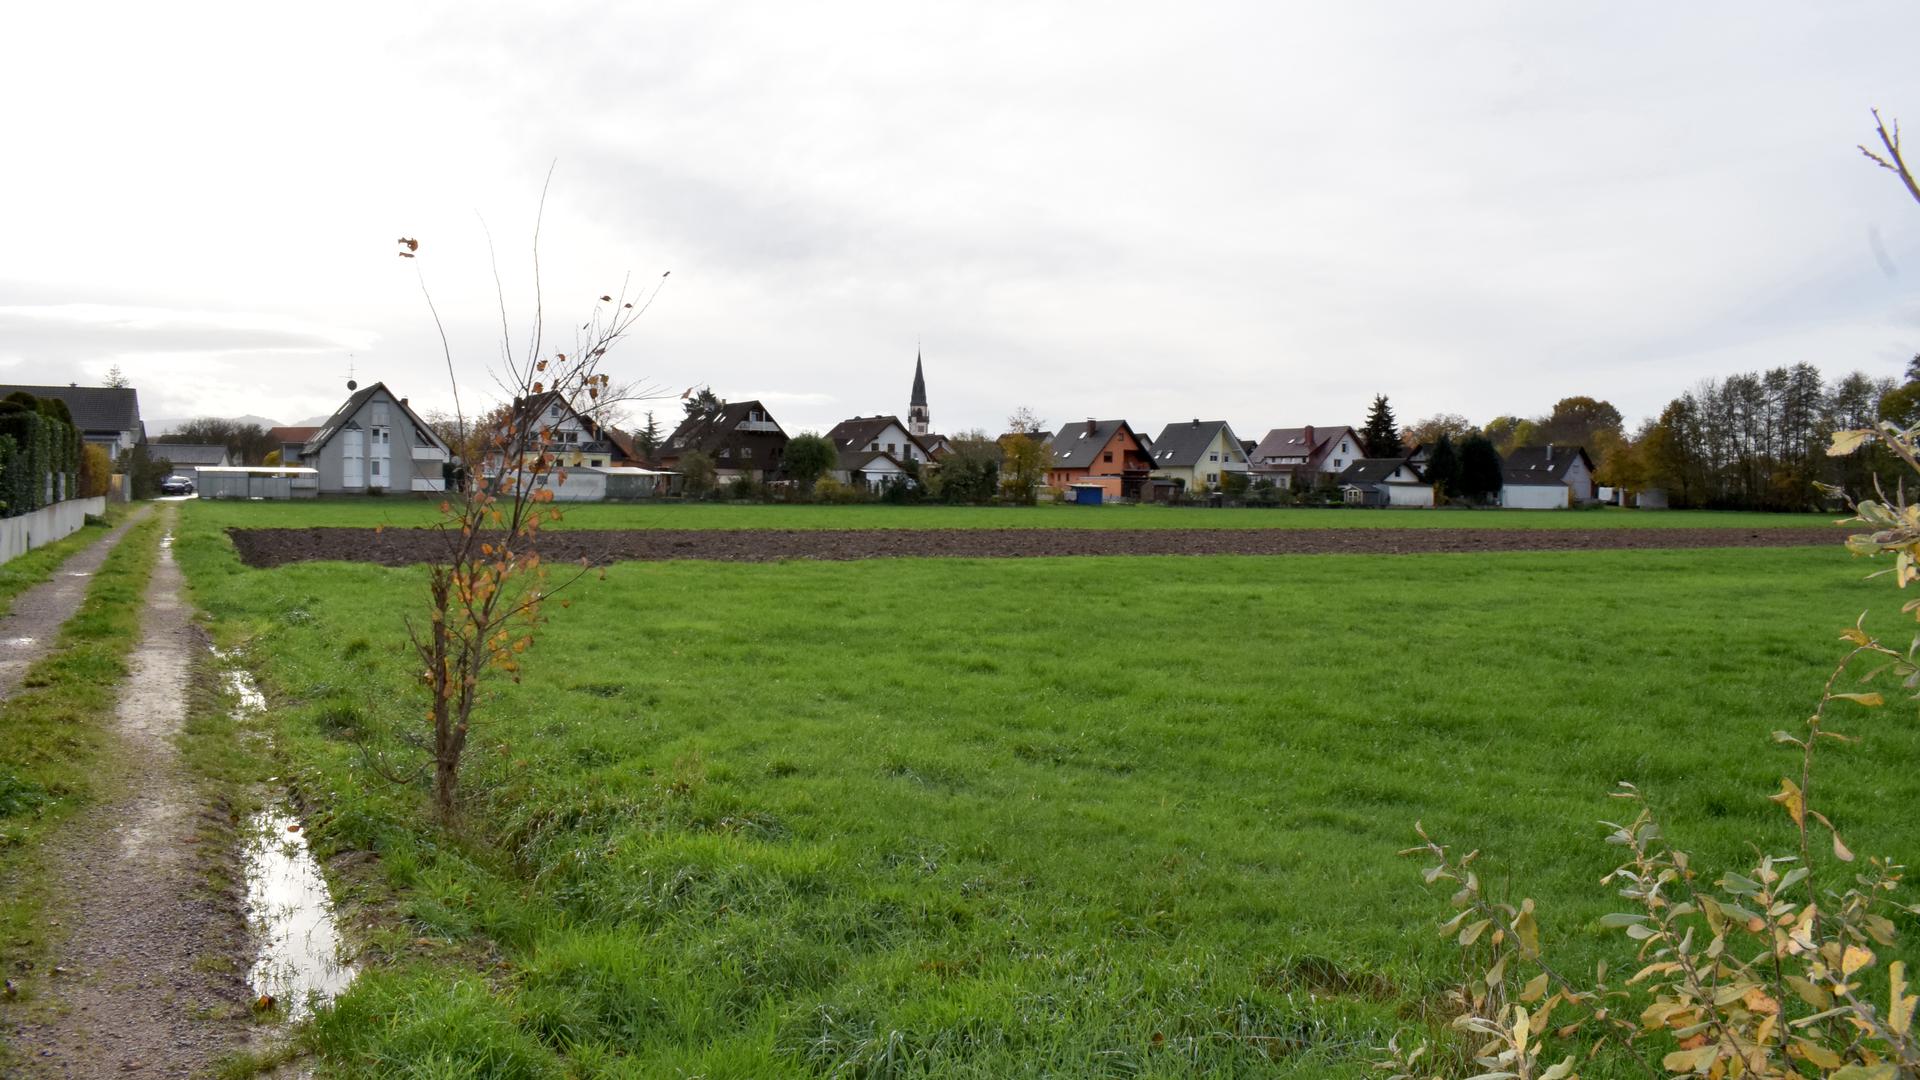 Ein Feldweg, eine grüne Wiese und Ackerflächen, dahinter Wohnerhäuser und ein Kirchturm.